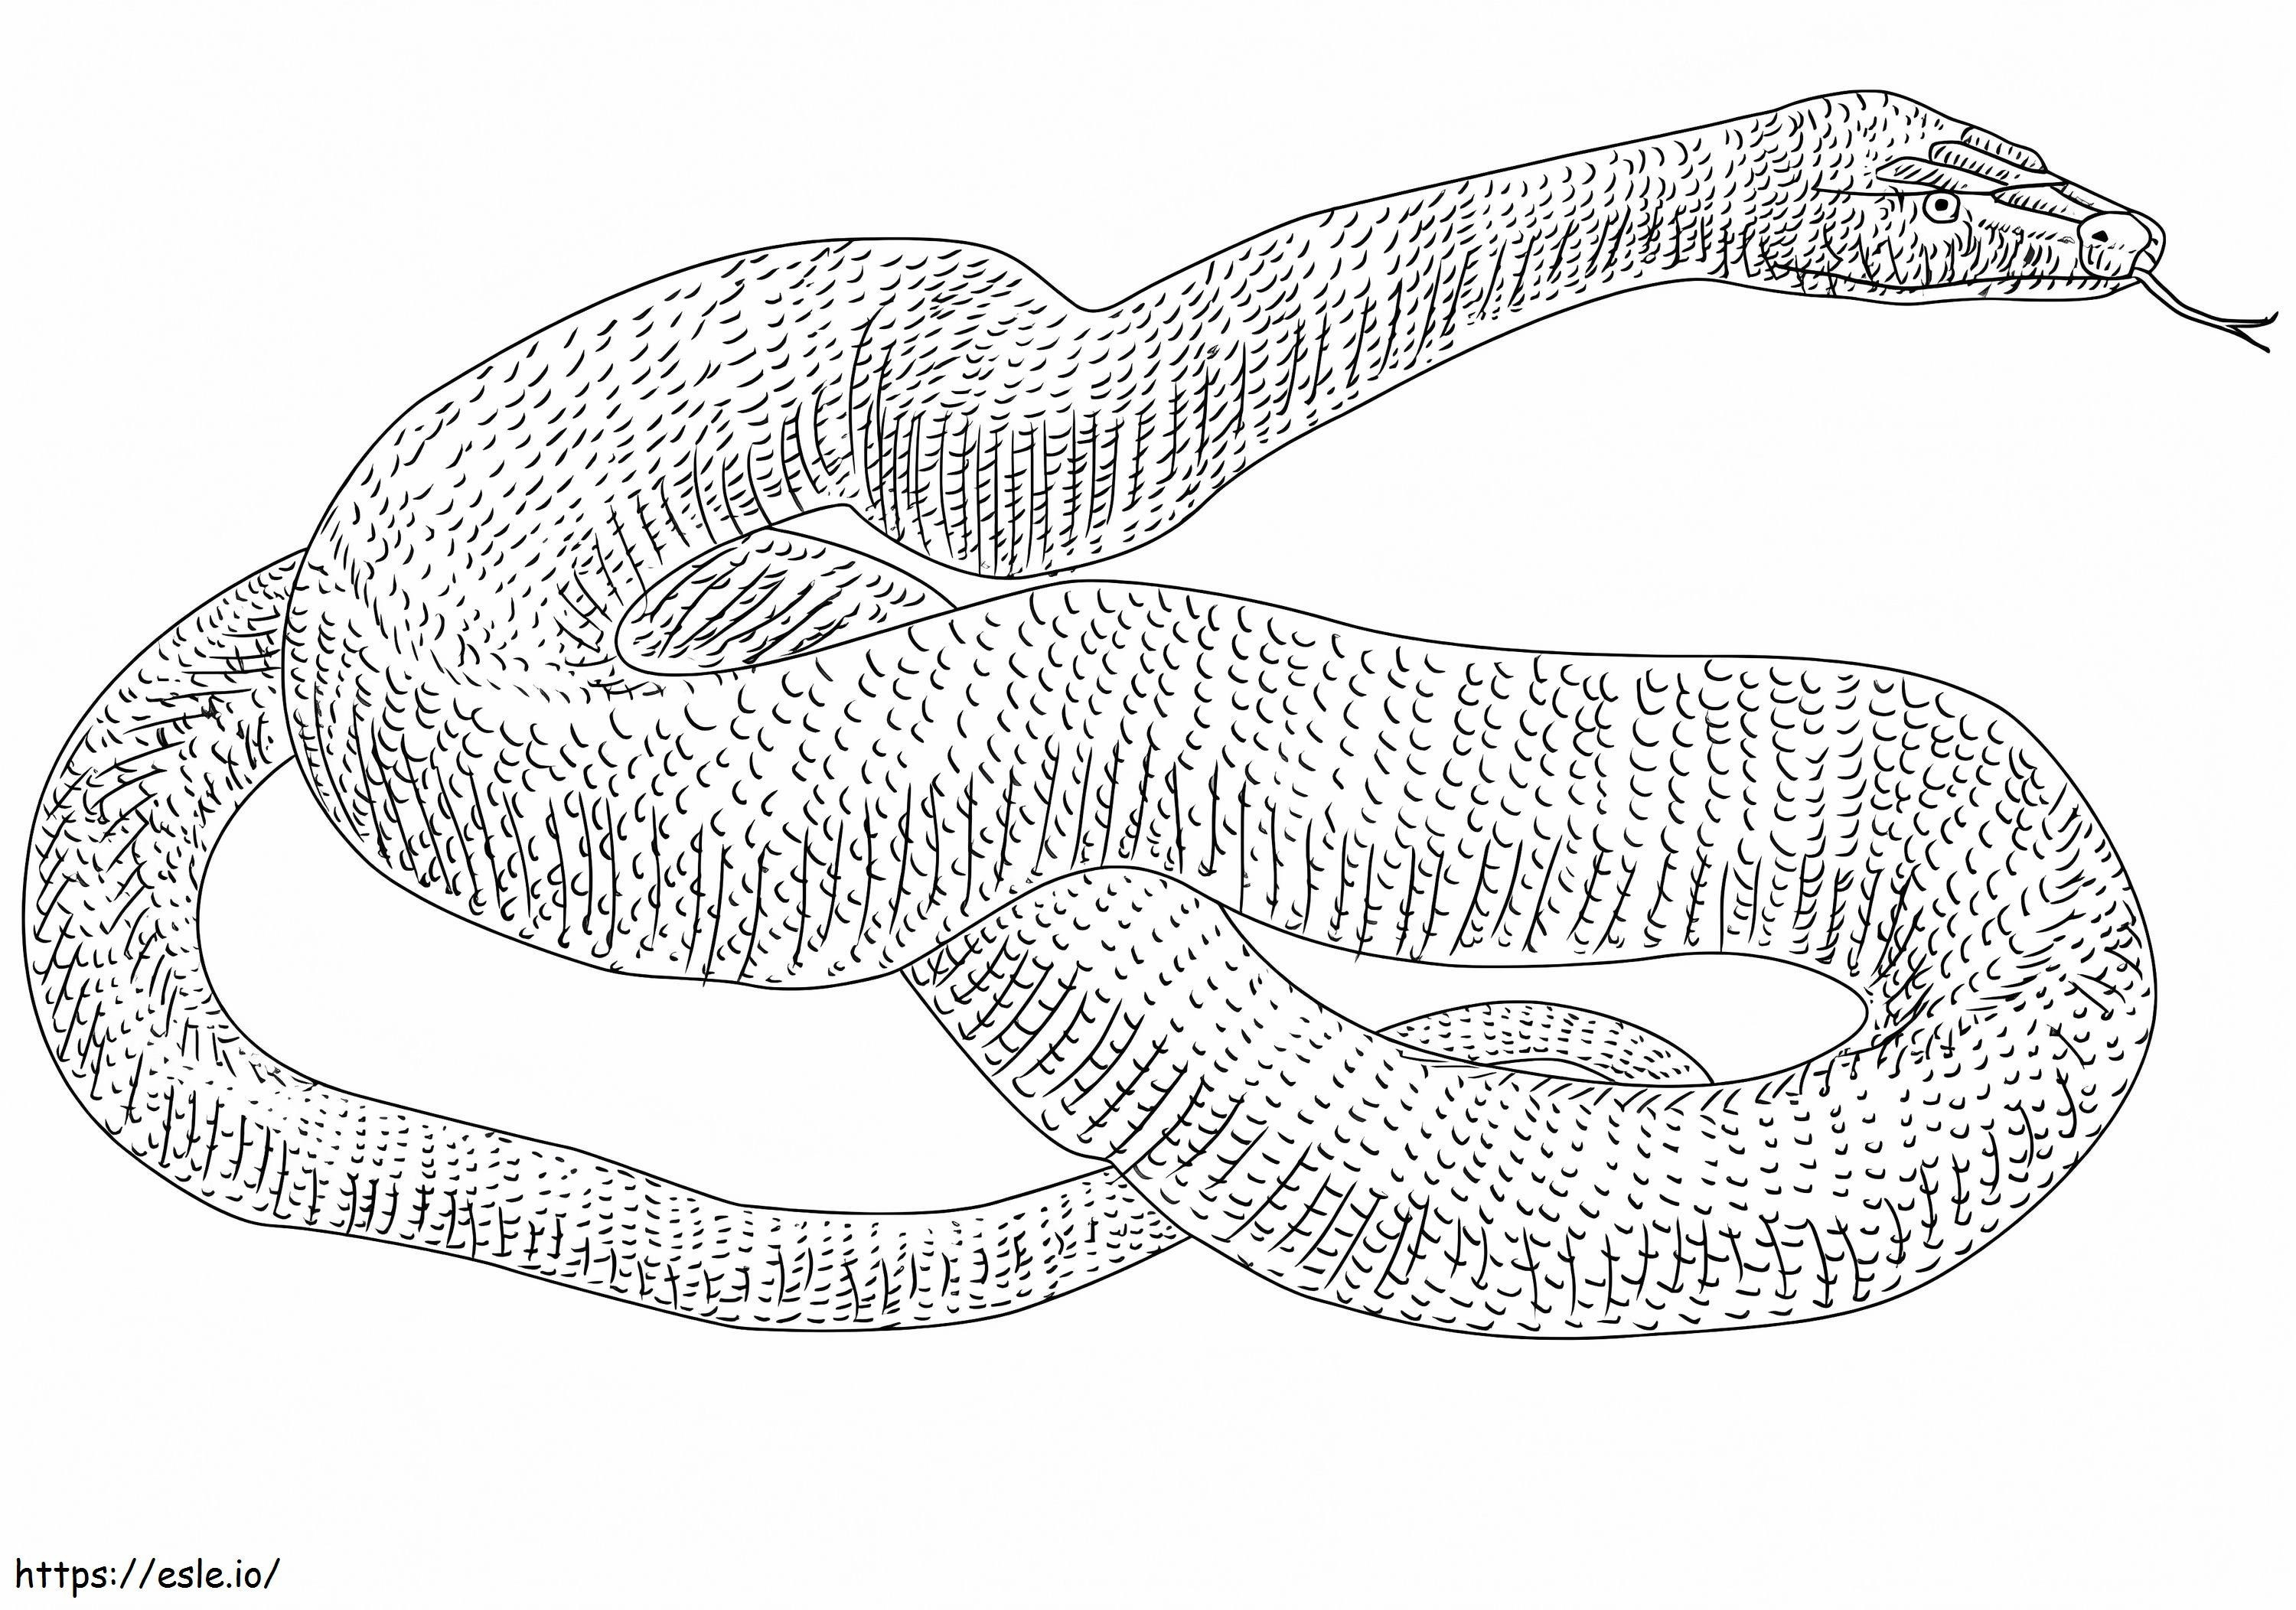 Serpente anaconda da colorare